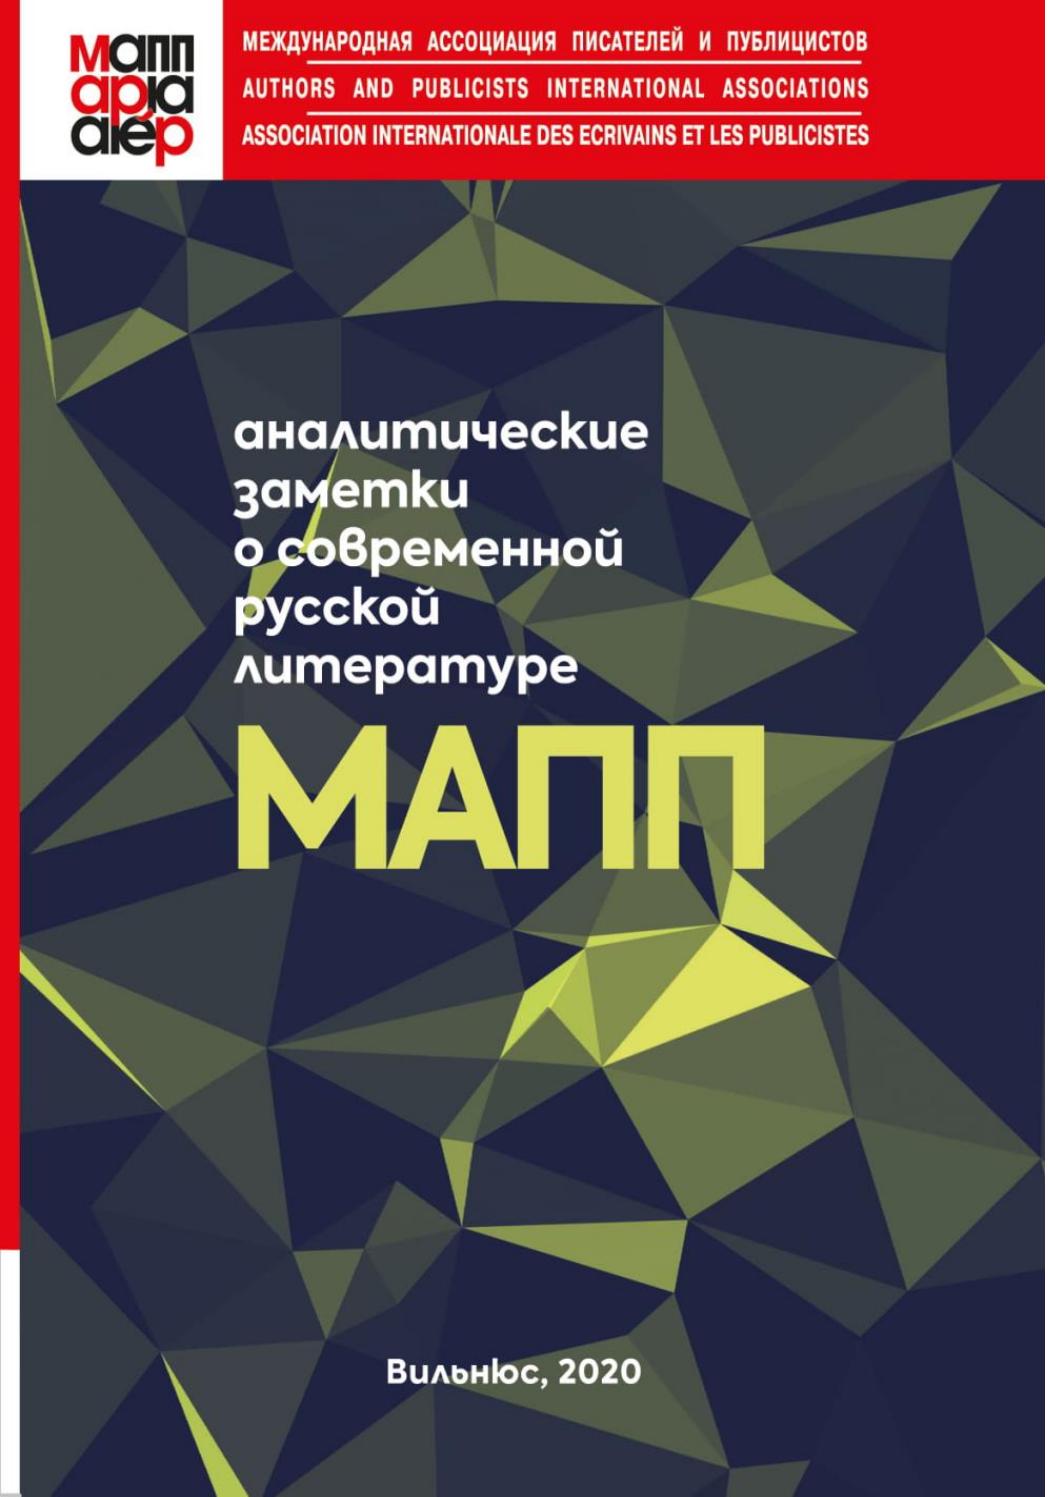 Аналитические заметки о современной русской литературе (МАПП), 2020, Лев Месенгисер